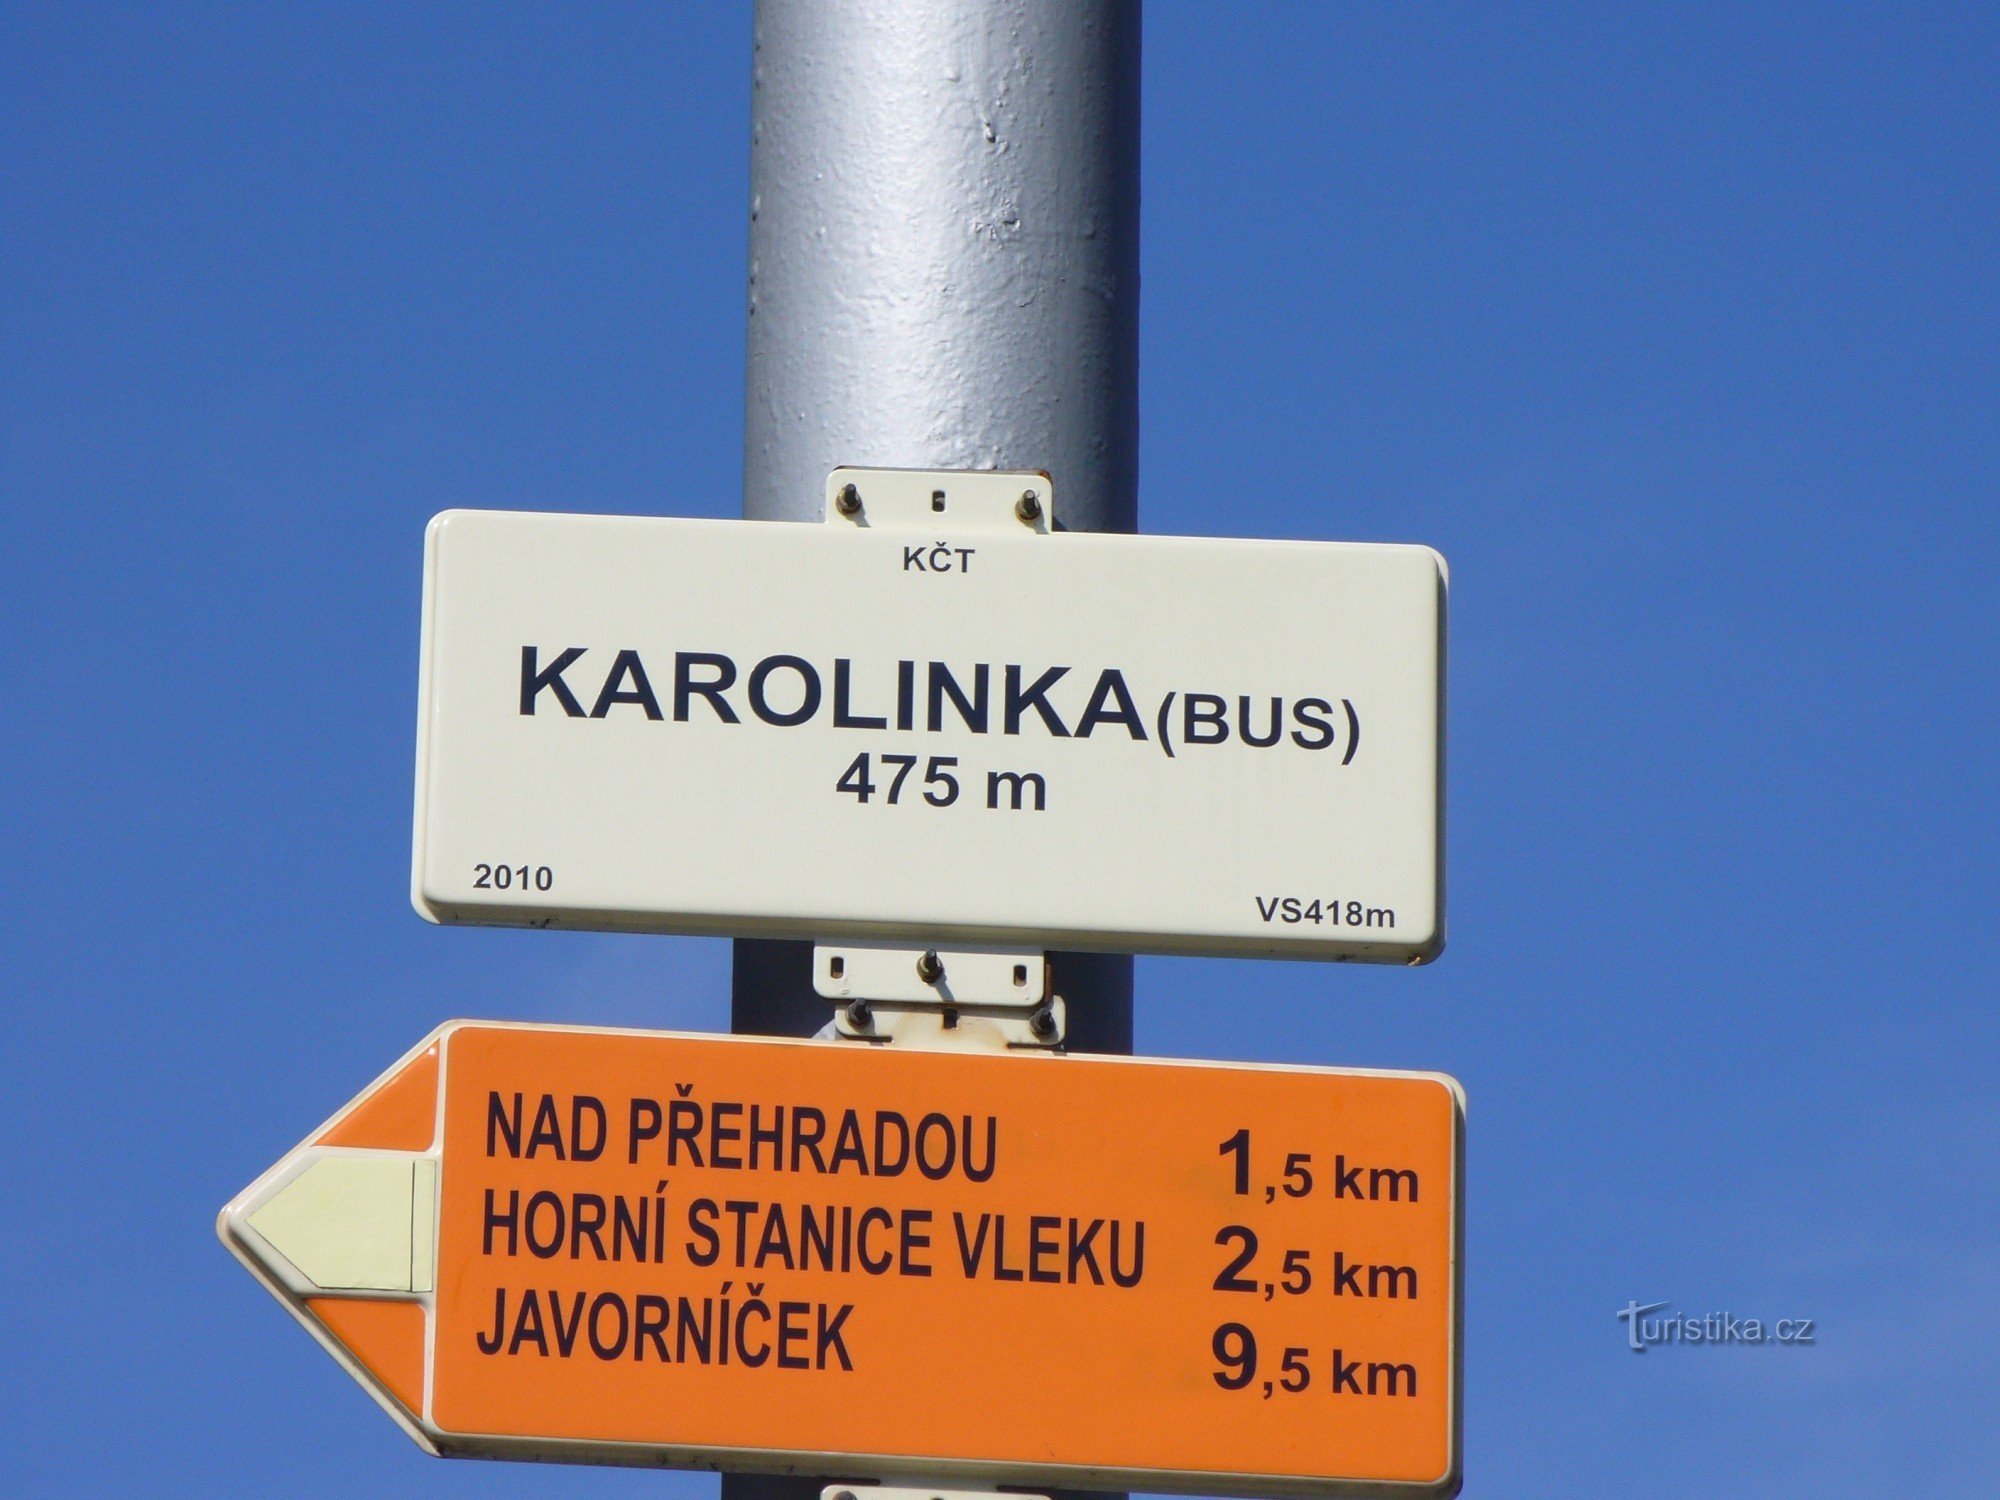 Primo cartello - Karolinka (BUS)